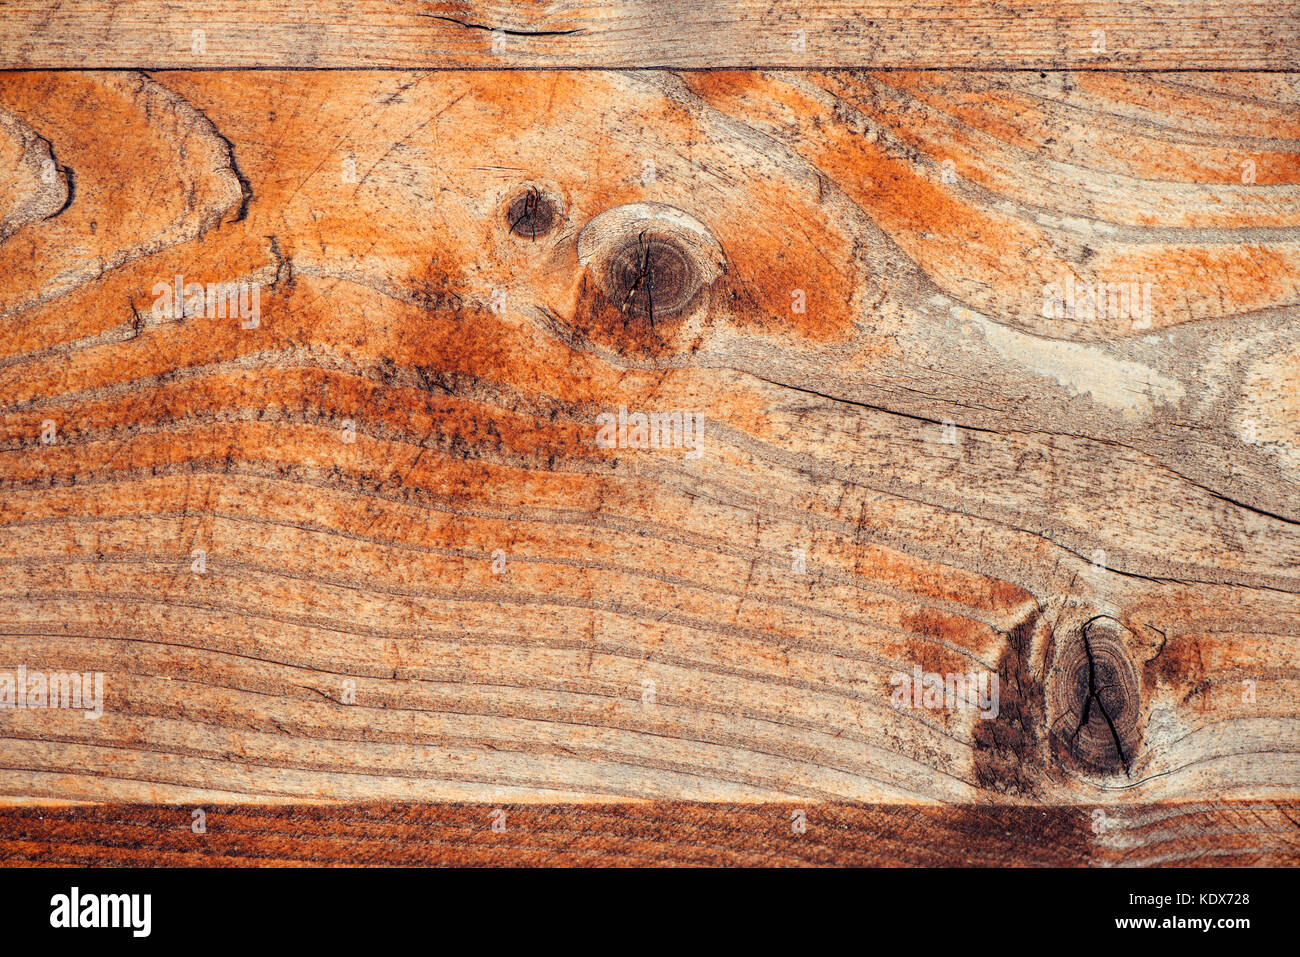 Abstract Sfondo legno, full frame listone rustico texture di legno. meteo scheda usurata superficie con segni di età. Foto Stock